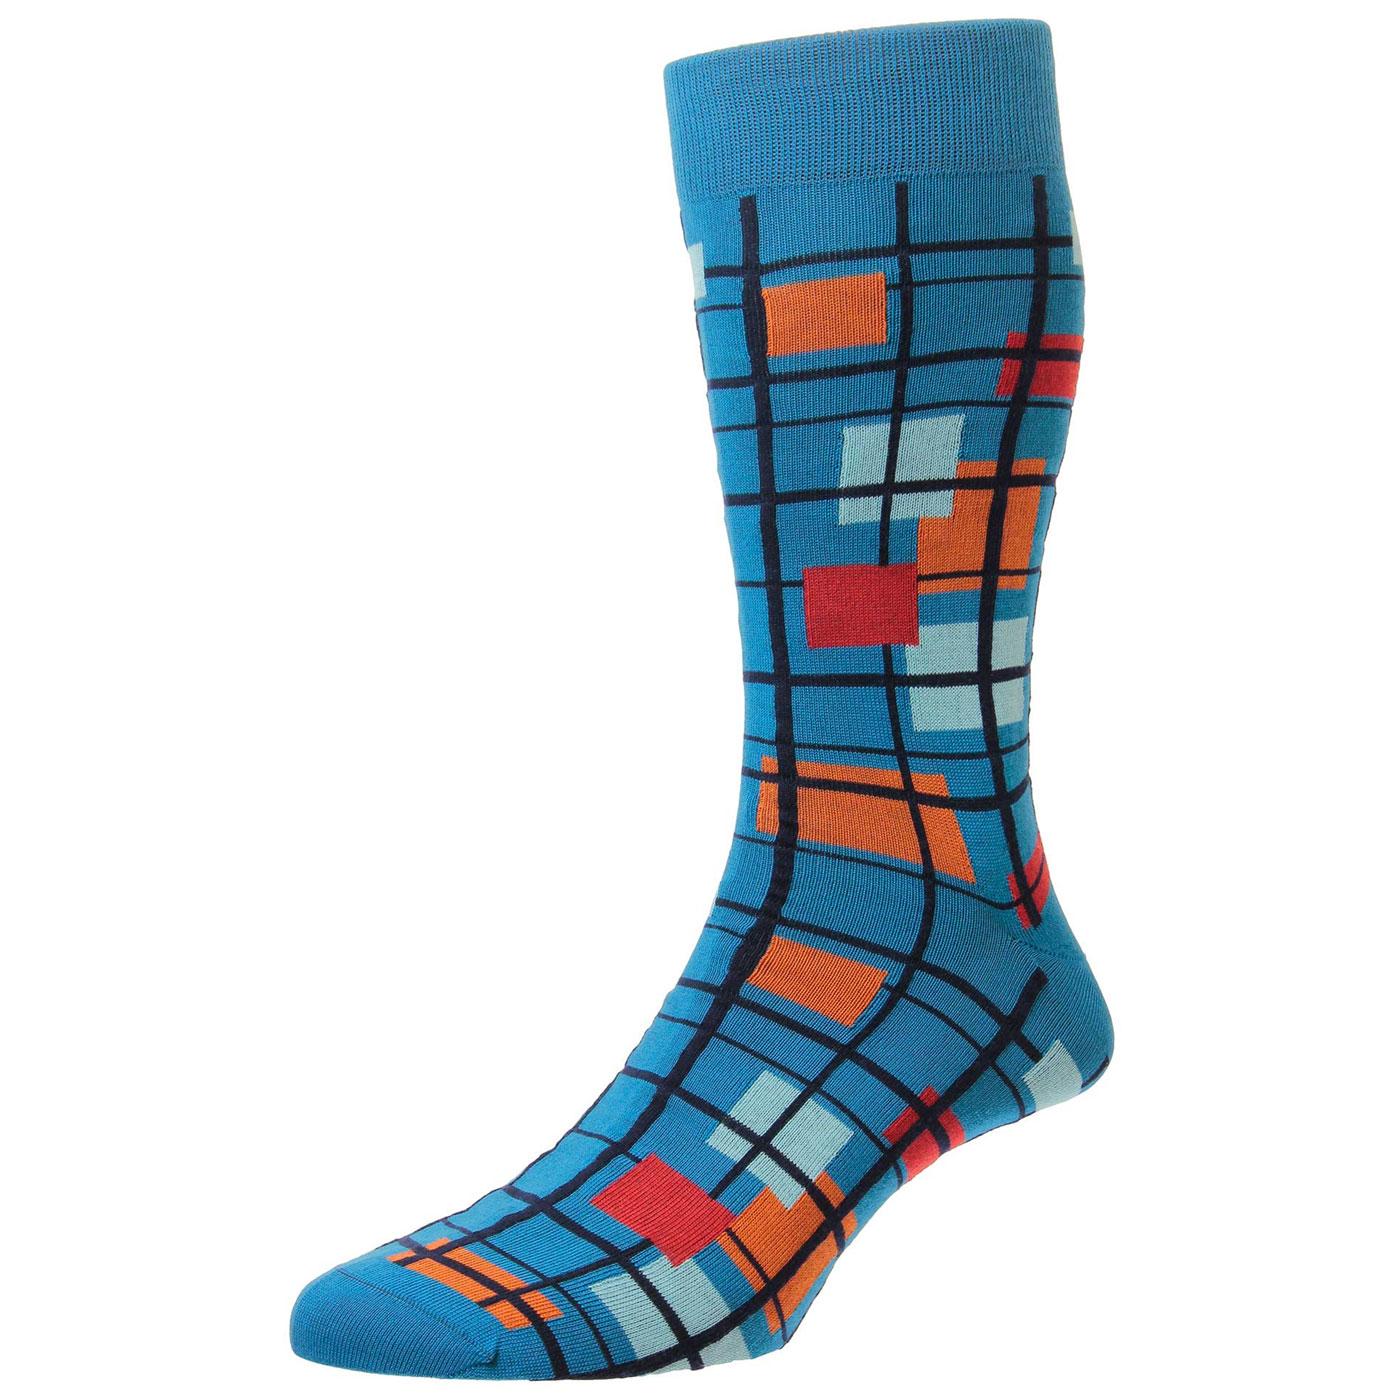 + Wright PANTHERELLA Mod Mondrian Check Socks (PB)